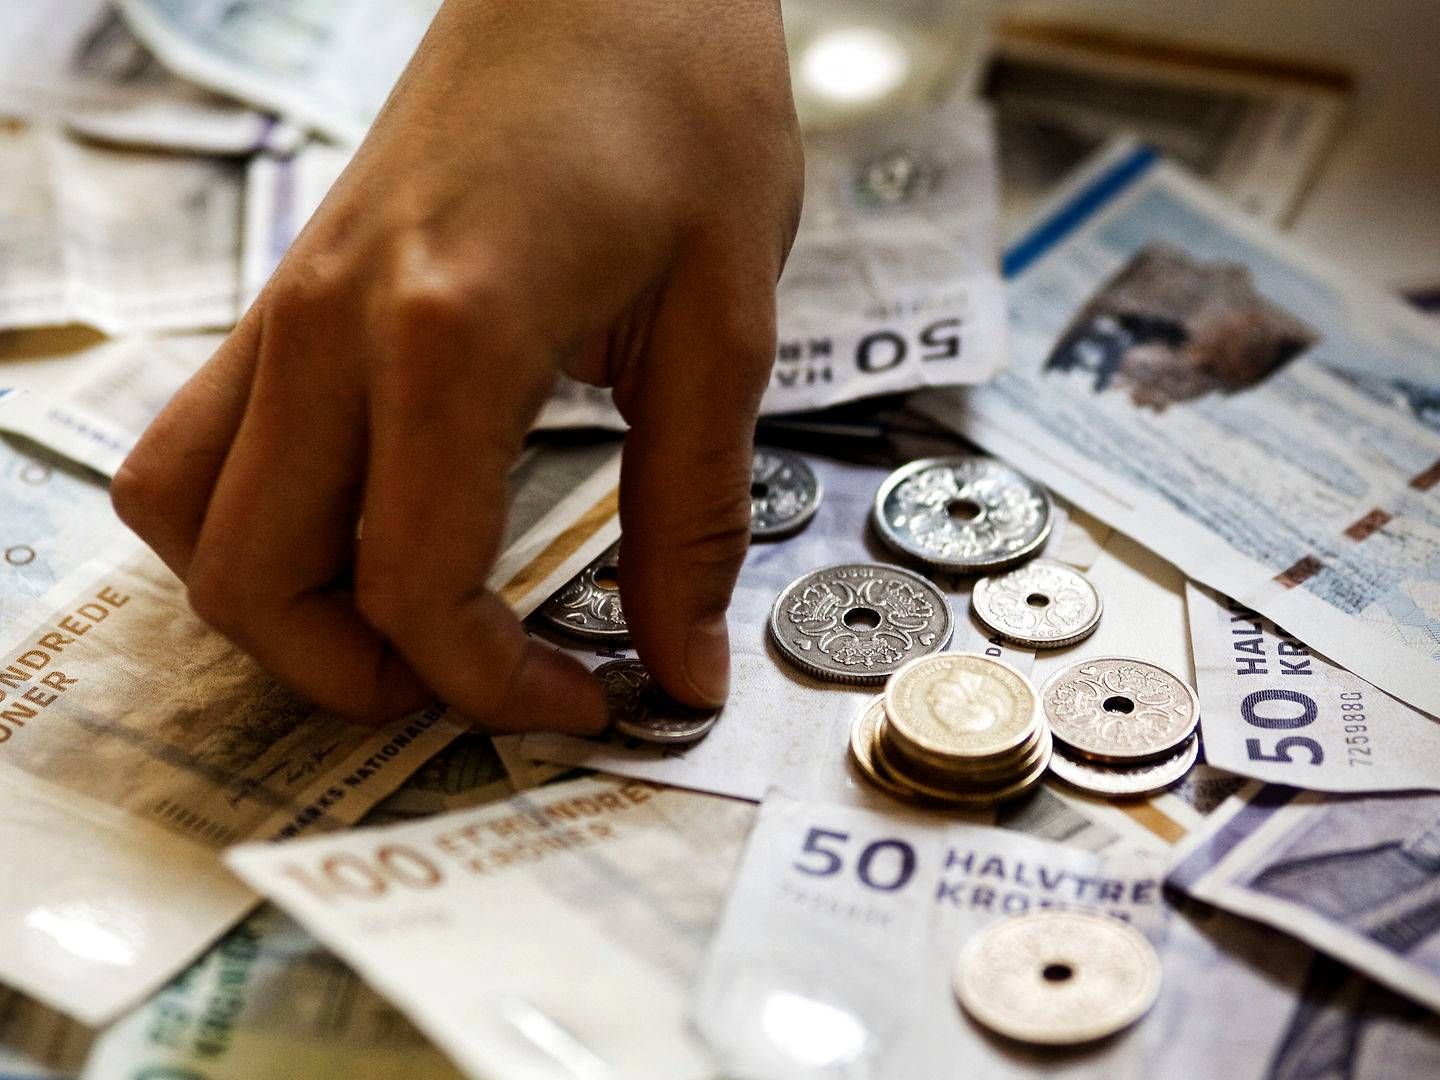 Nationalbankens anbefaling om at borgerne skal ligge inde med kontanter i små sedler får Nokas-direktør til at undersøge om 50'eren kan komme tilbage i hæveautomaterne. | Foto: Lærke Posselt/Politiken/Ritzau Scanpix